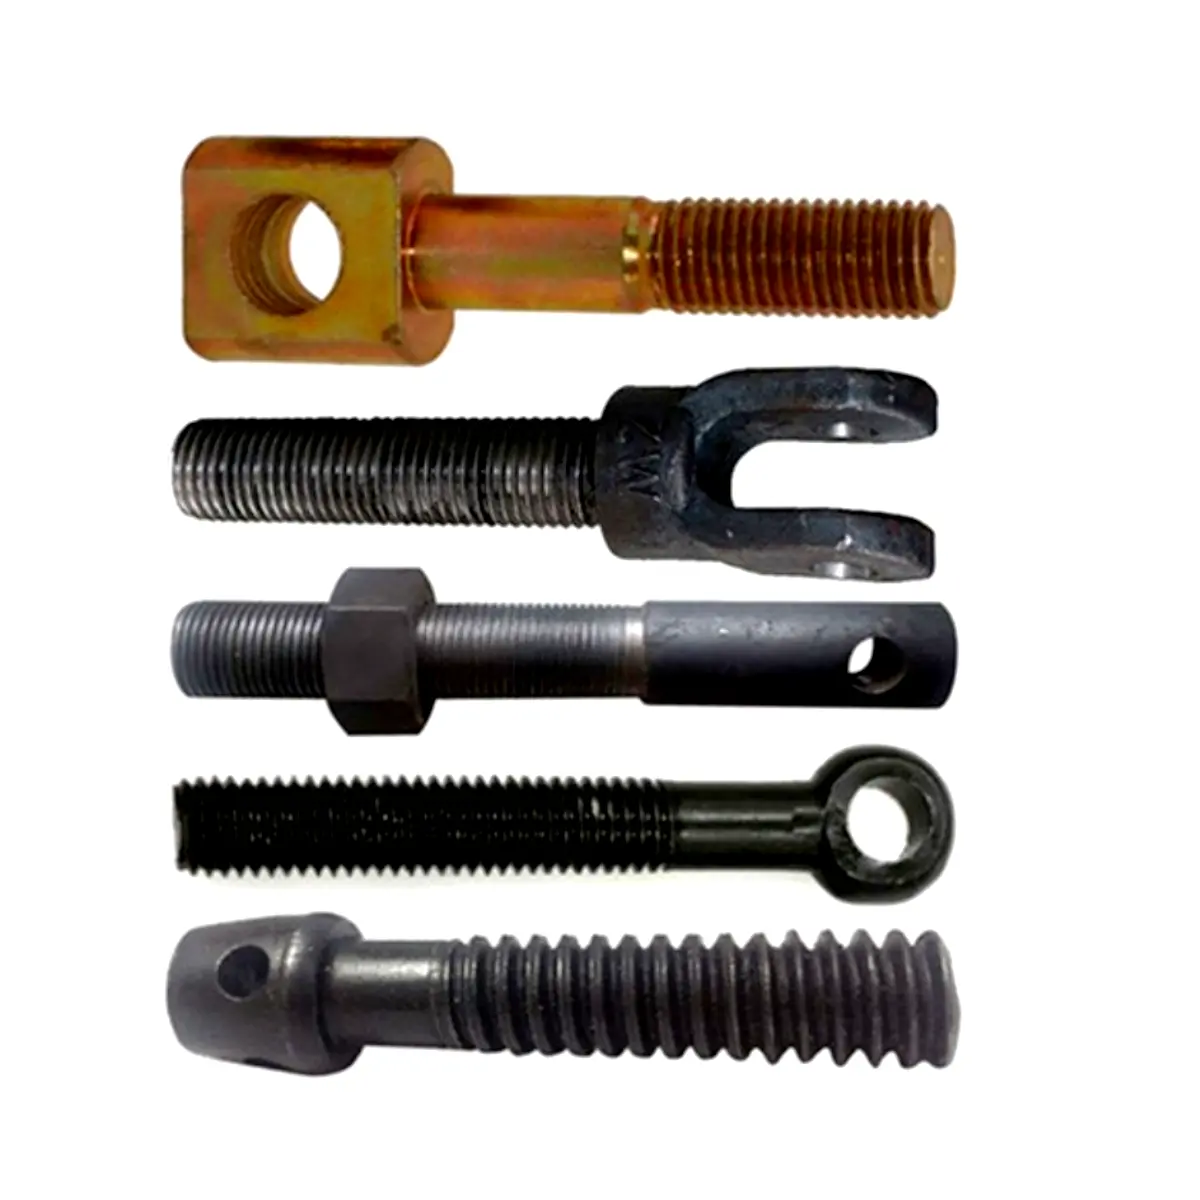 Speziell geformte Schraube, nicht standard mäßige Schraube, Kaltkopf-Warm schmieden, kann bestimmt werden